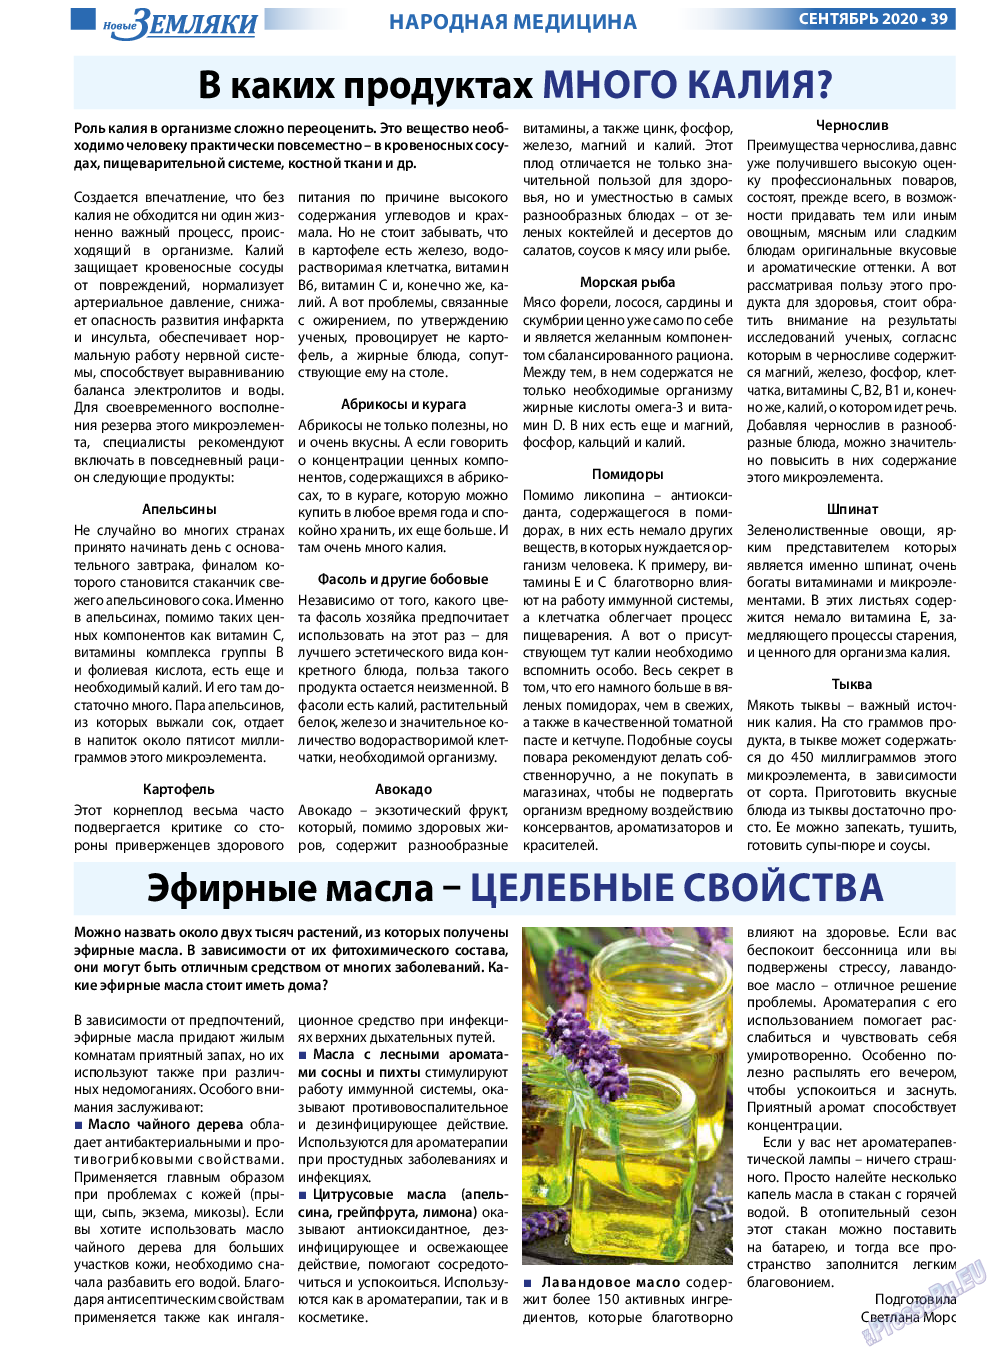 Новые Земляки, газета. 2020 №9 стр.39